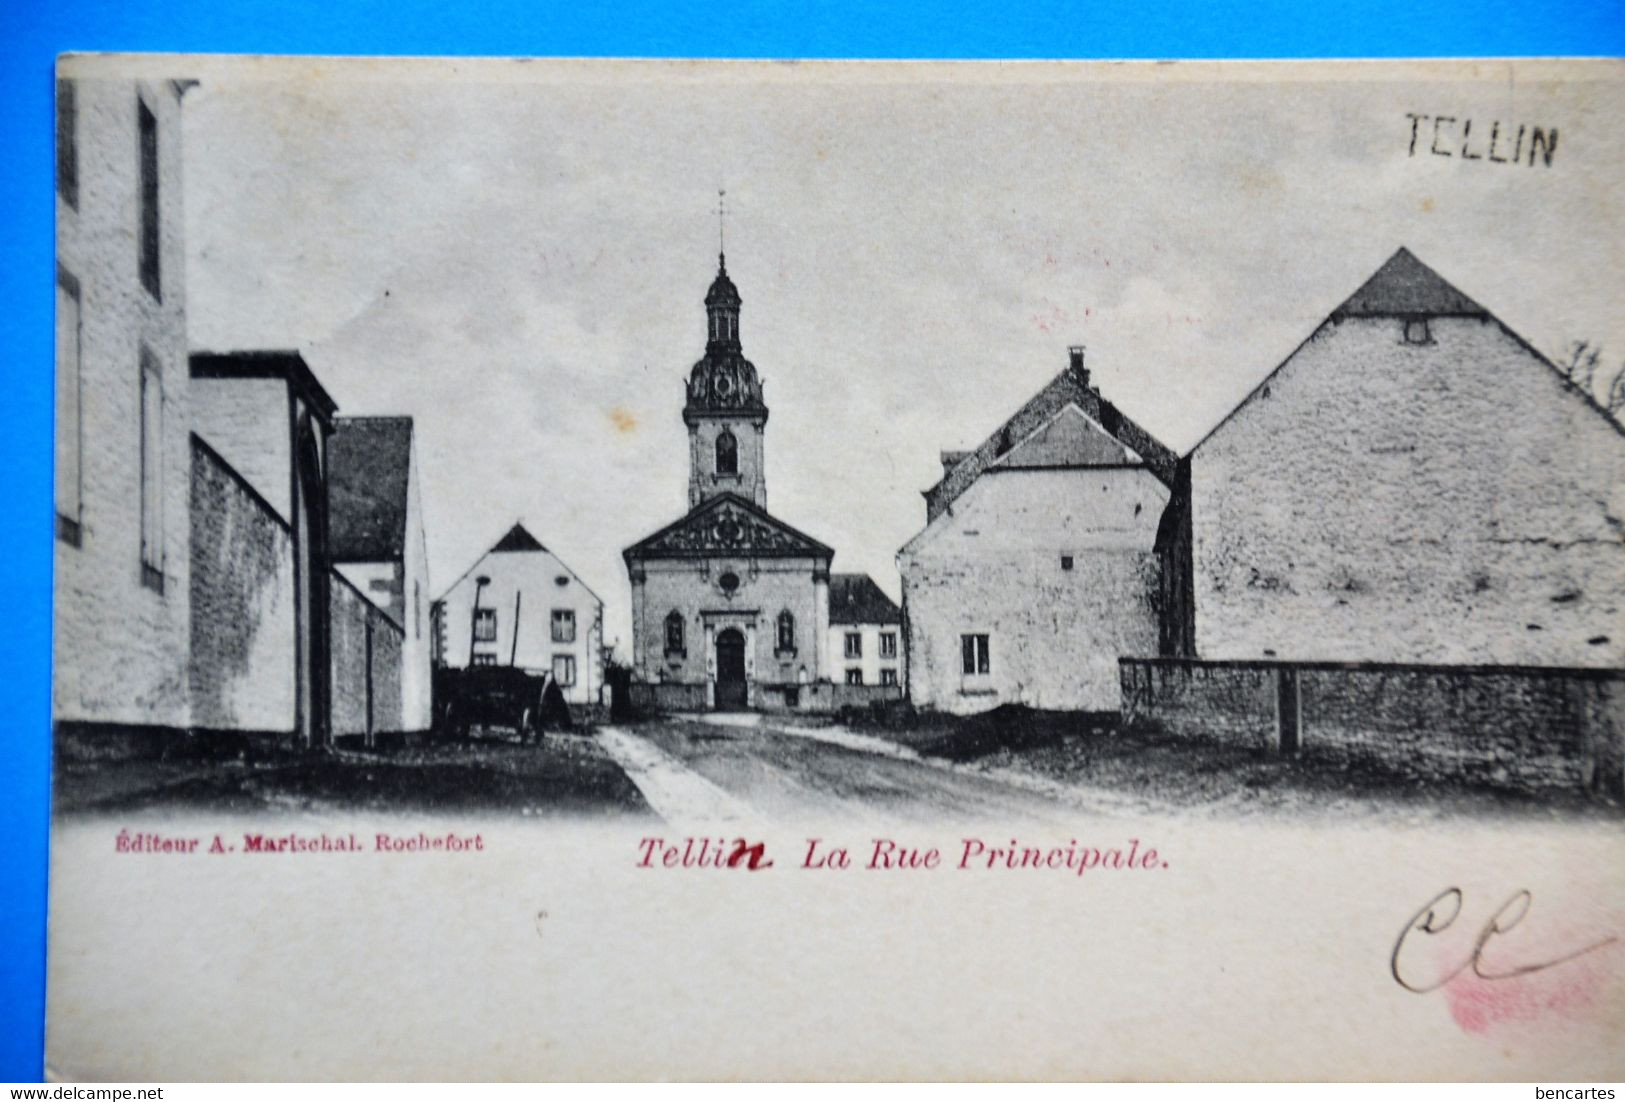 Tellin 1904: La Rue Principale - Tellin